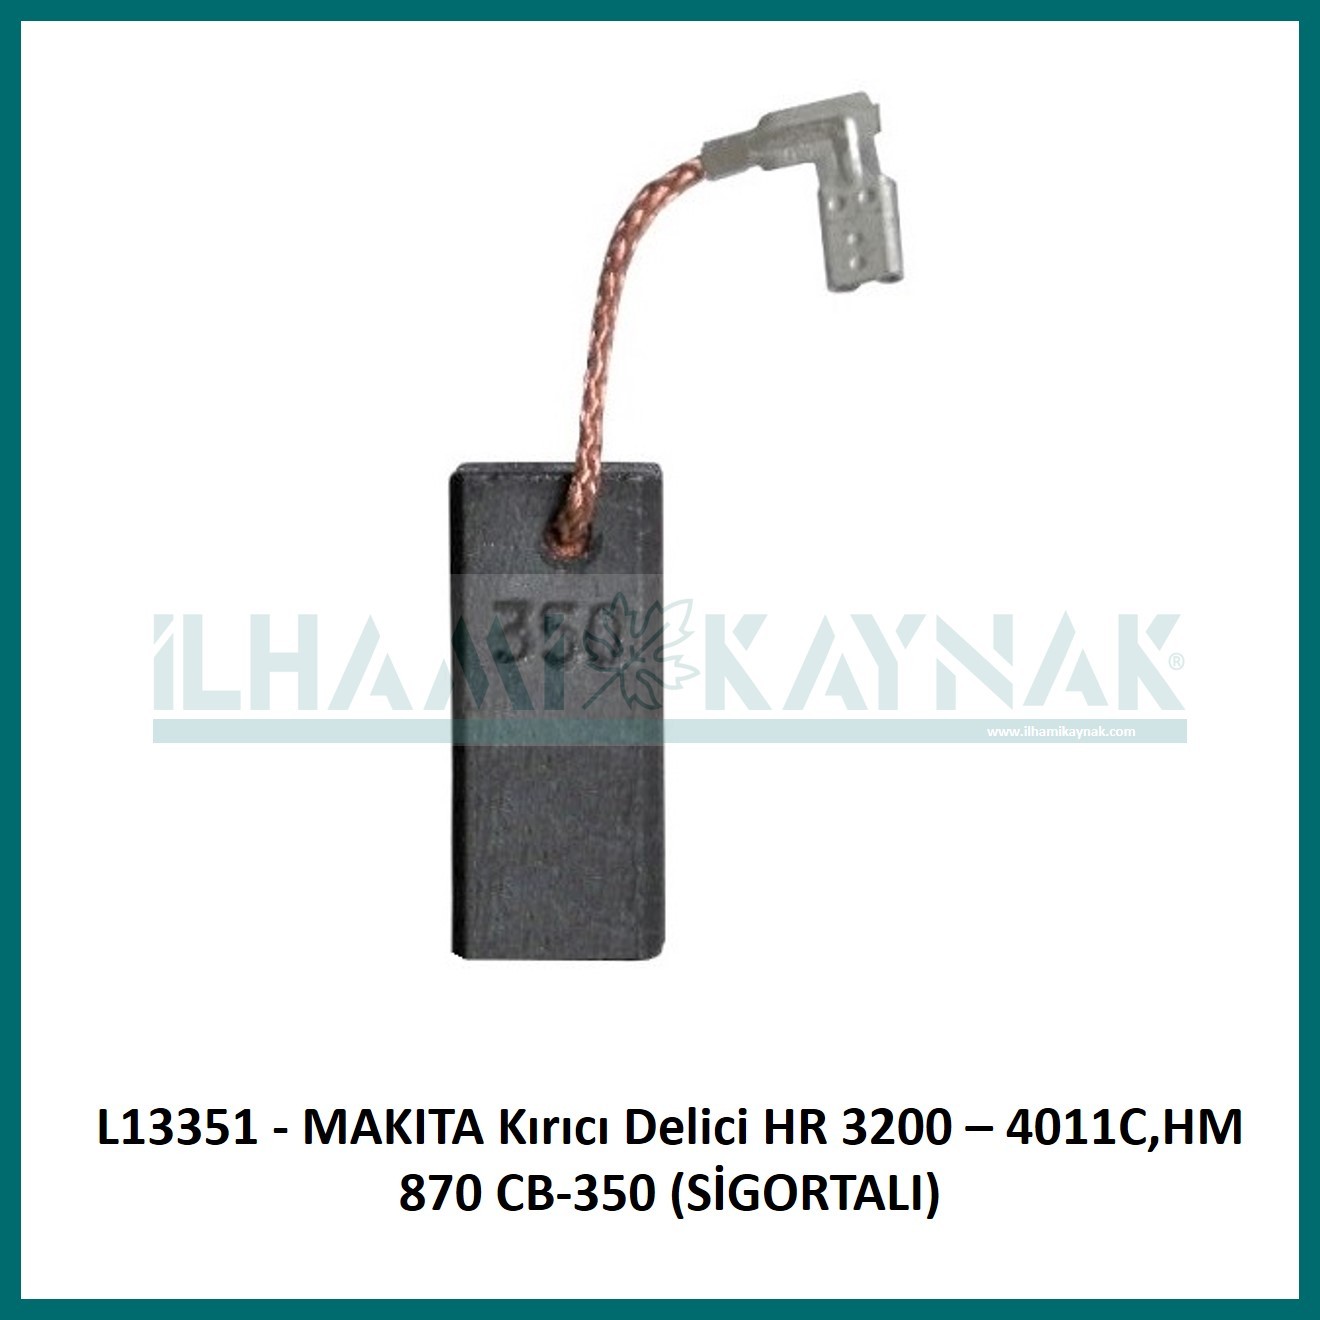 L13351 - MAKITA Kırıcı Delici HR 3200 – 4011C,HM 870 CB-350 (SİGORTALI) - 6.5*11.25 mm - Minimum Satın Alım: 10 Adet